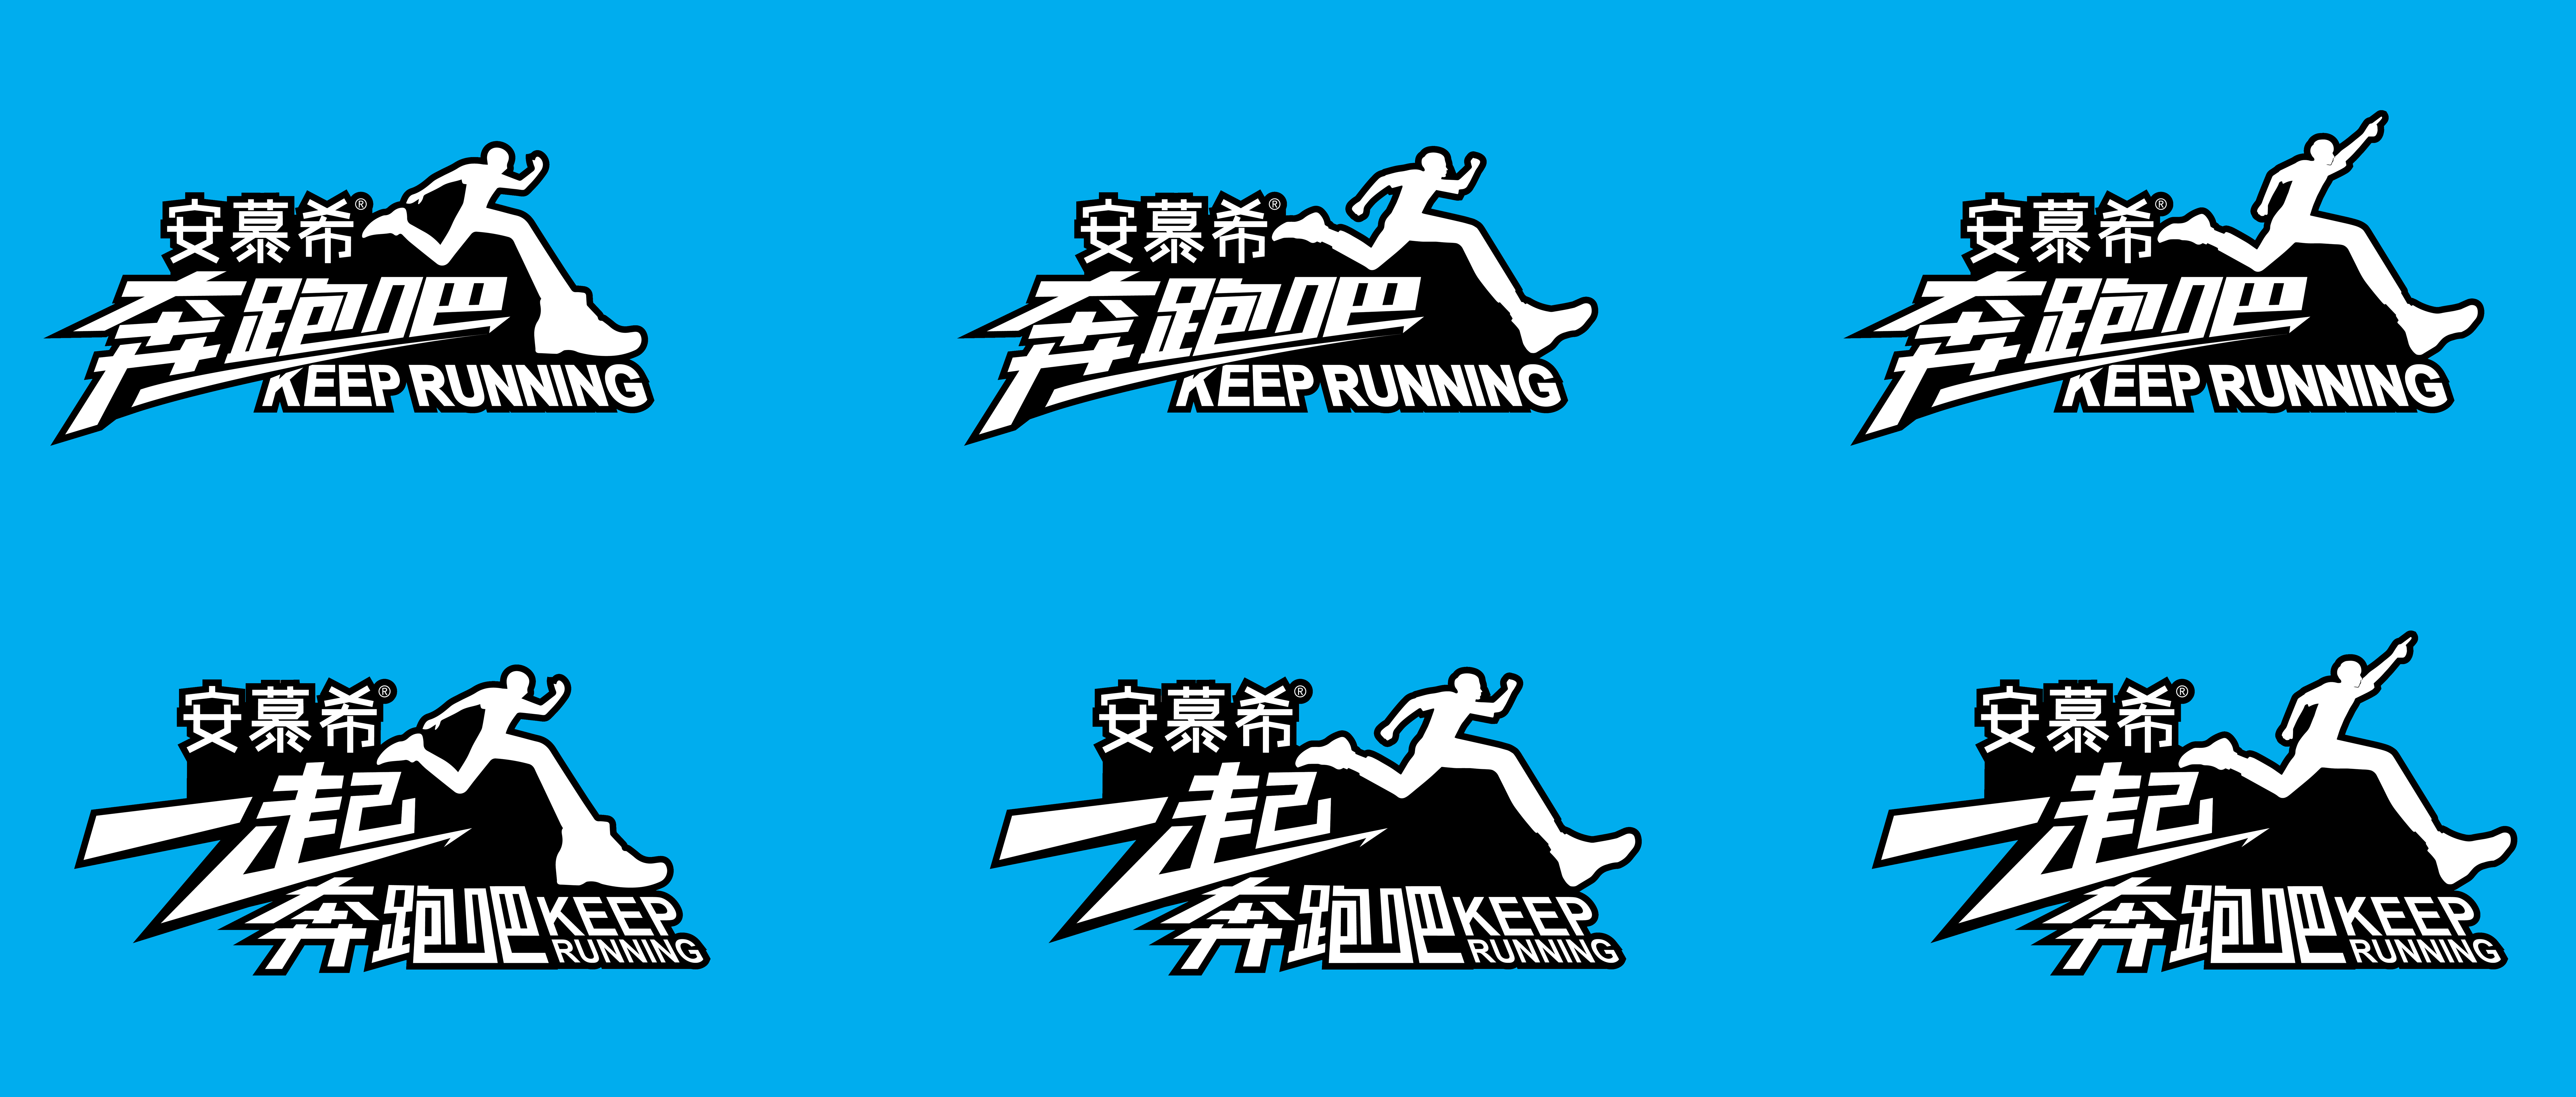 浙江卫视《奔跑吧 keep running》跑男第五季logo设计 